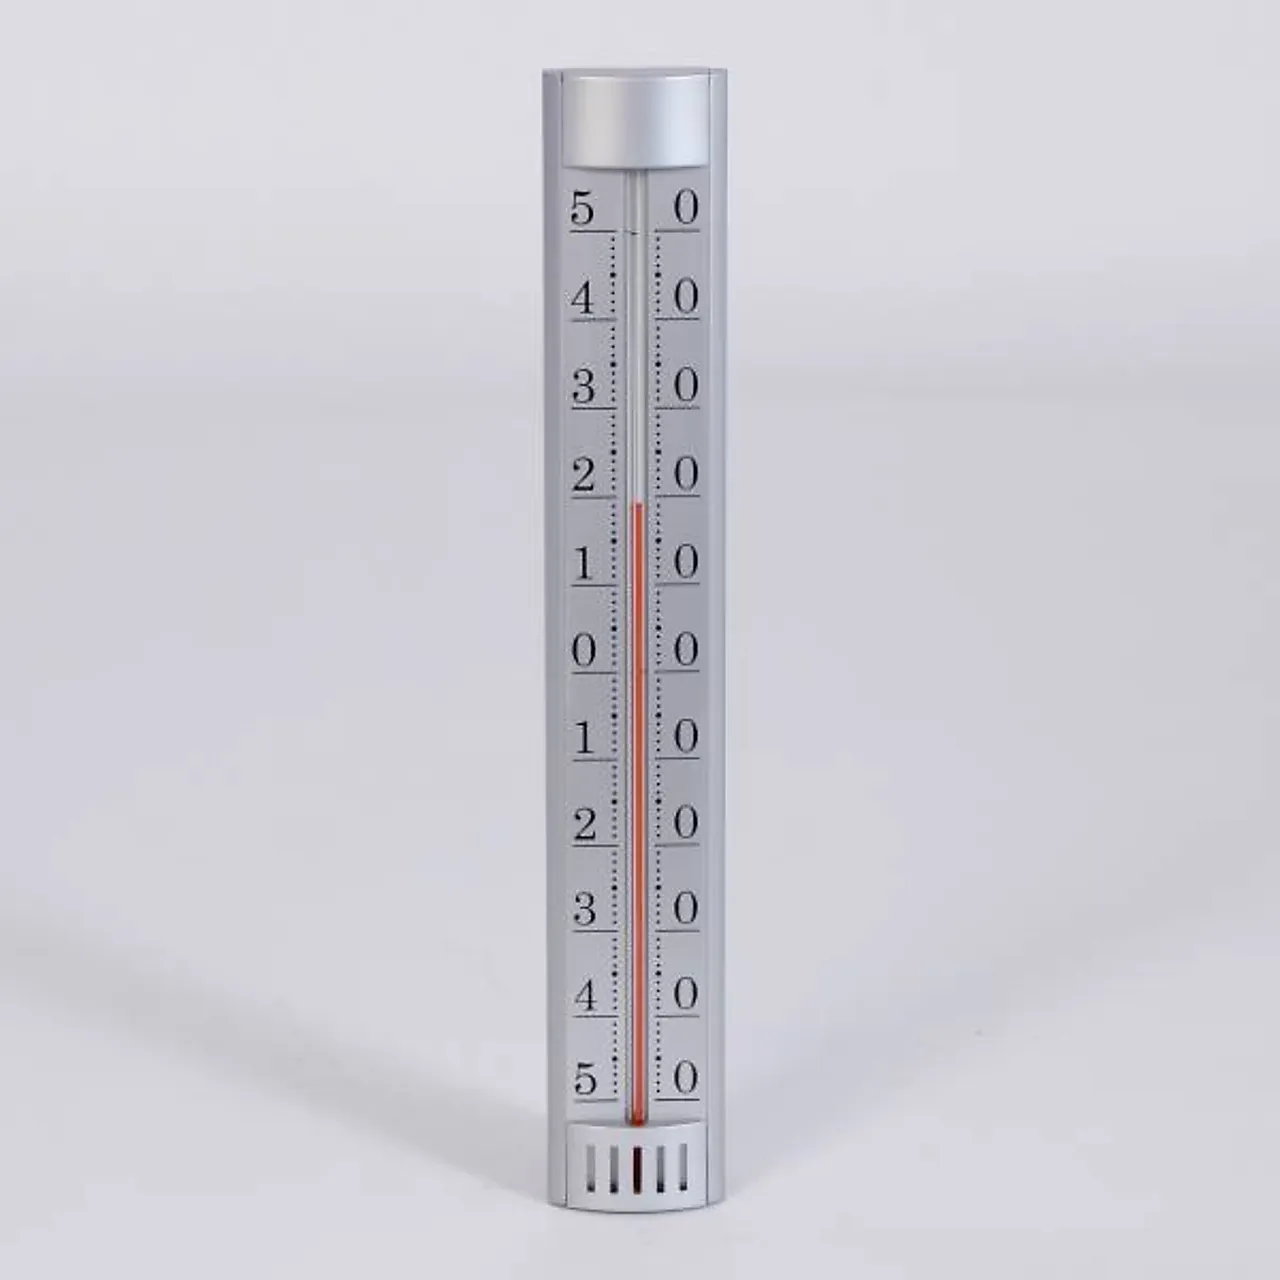 Termometer ute plast 32cm